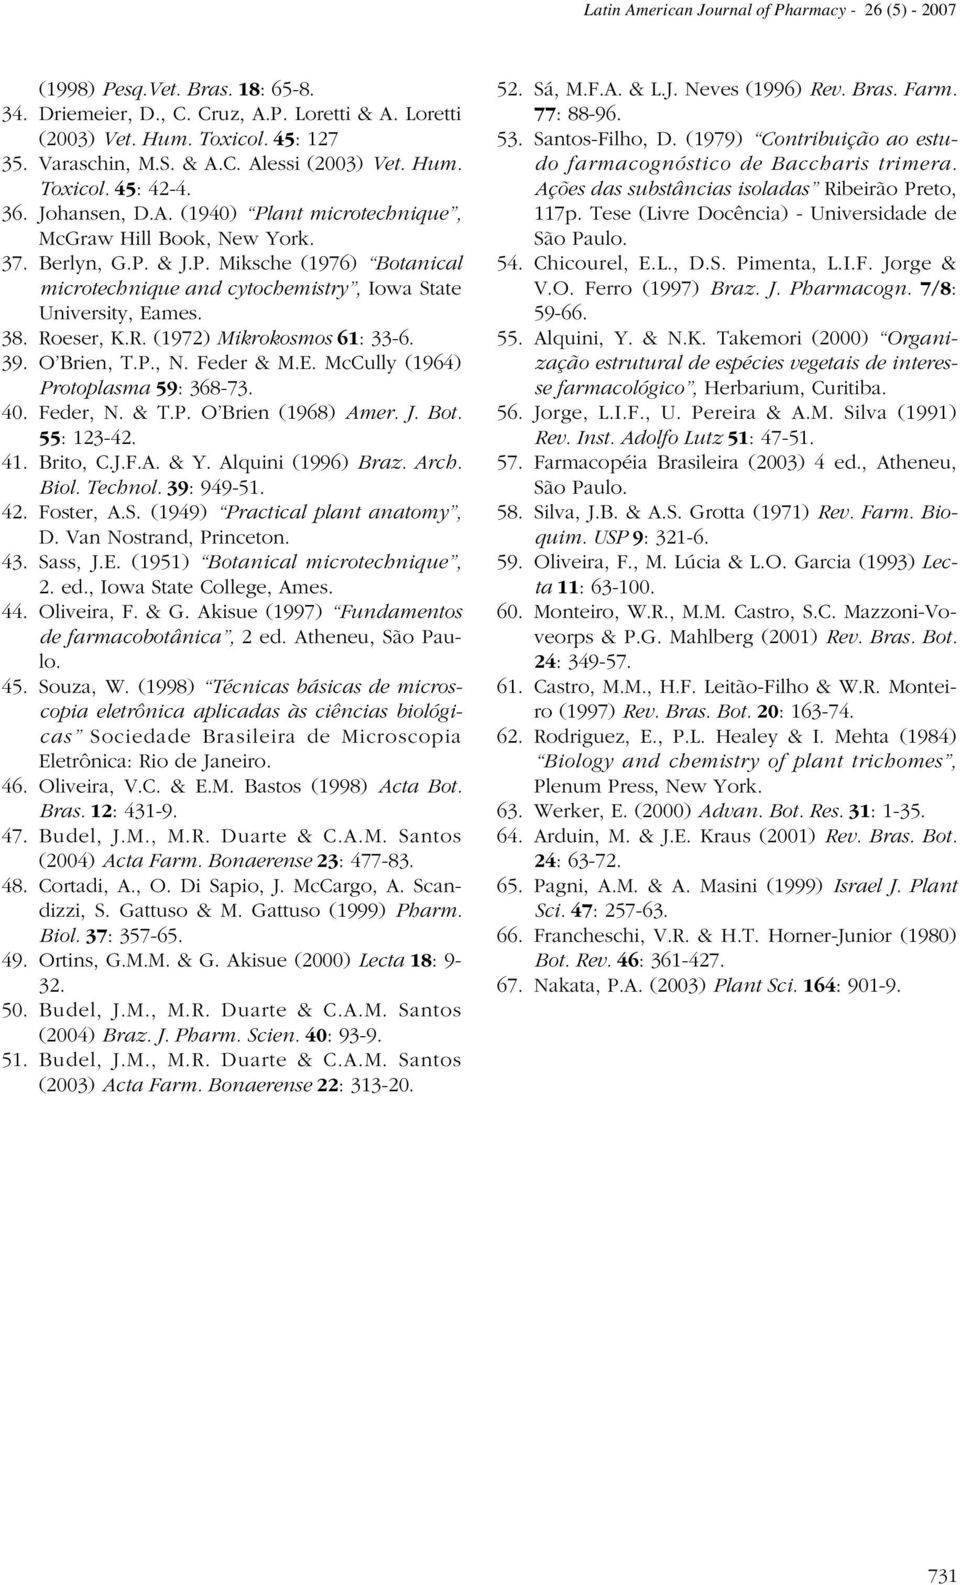 38. Roeser, K.R. (1972) Mikrokosmos 61: 33-6. 39. O Brien, T.P., N. Feder & M.E. McCully (1964) Protoplasma 59: 368-73. 40. Feder, N. & T.P. O Brien (1968) Amer. J. Bot. 55: 123-42. 41. Brito, C.J.F.A. & Y.